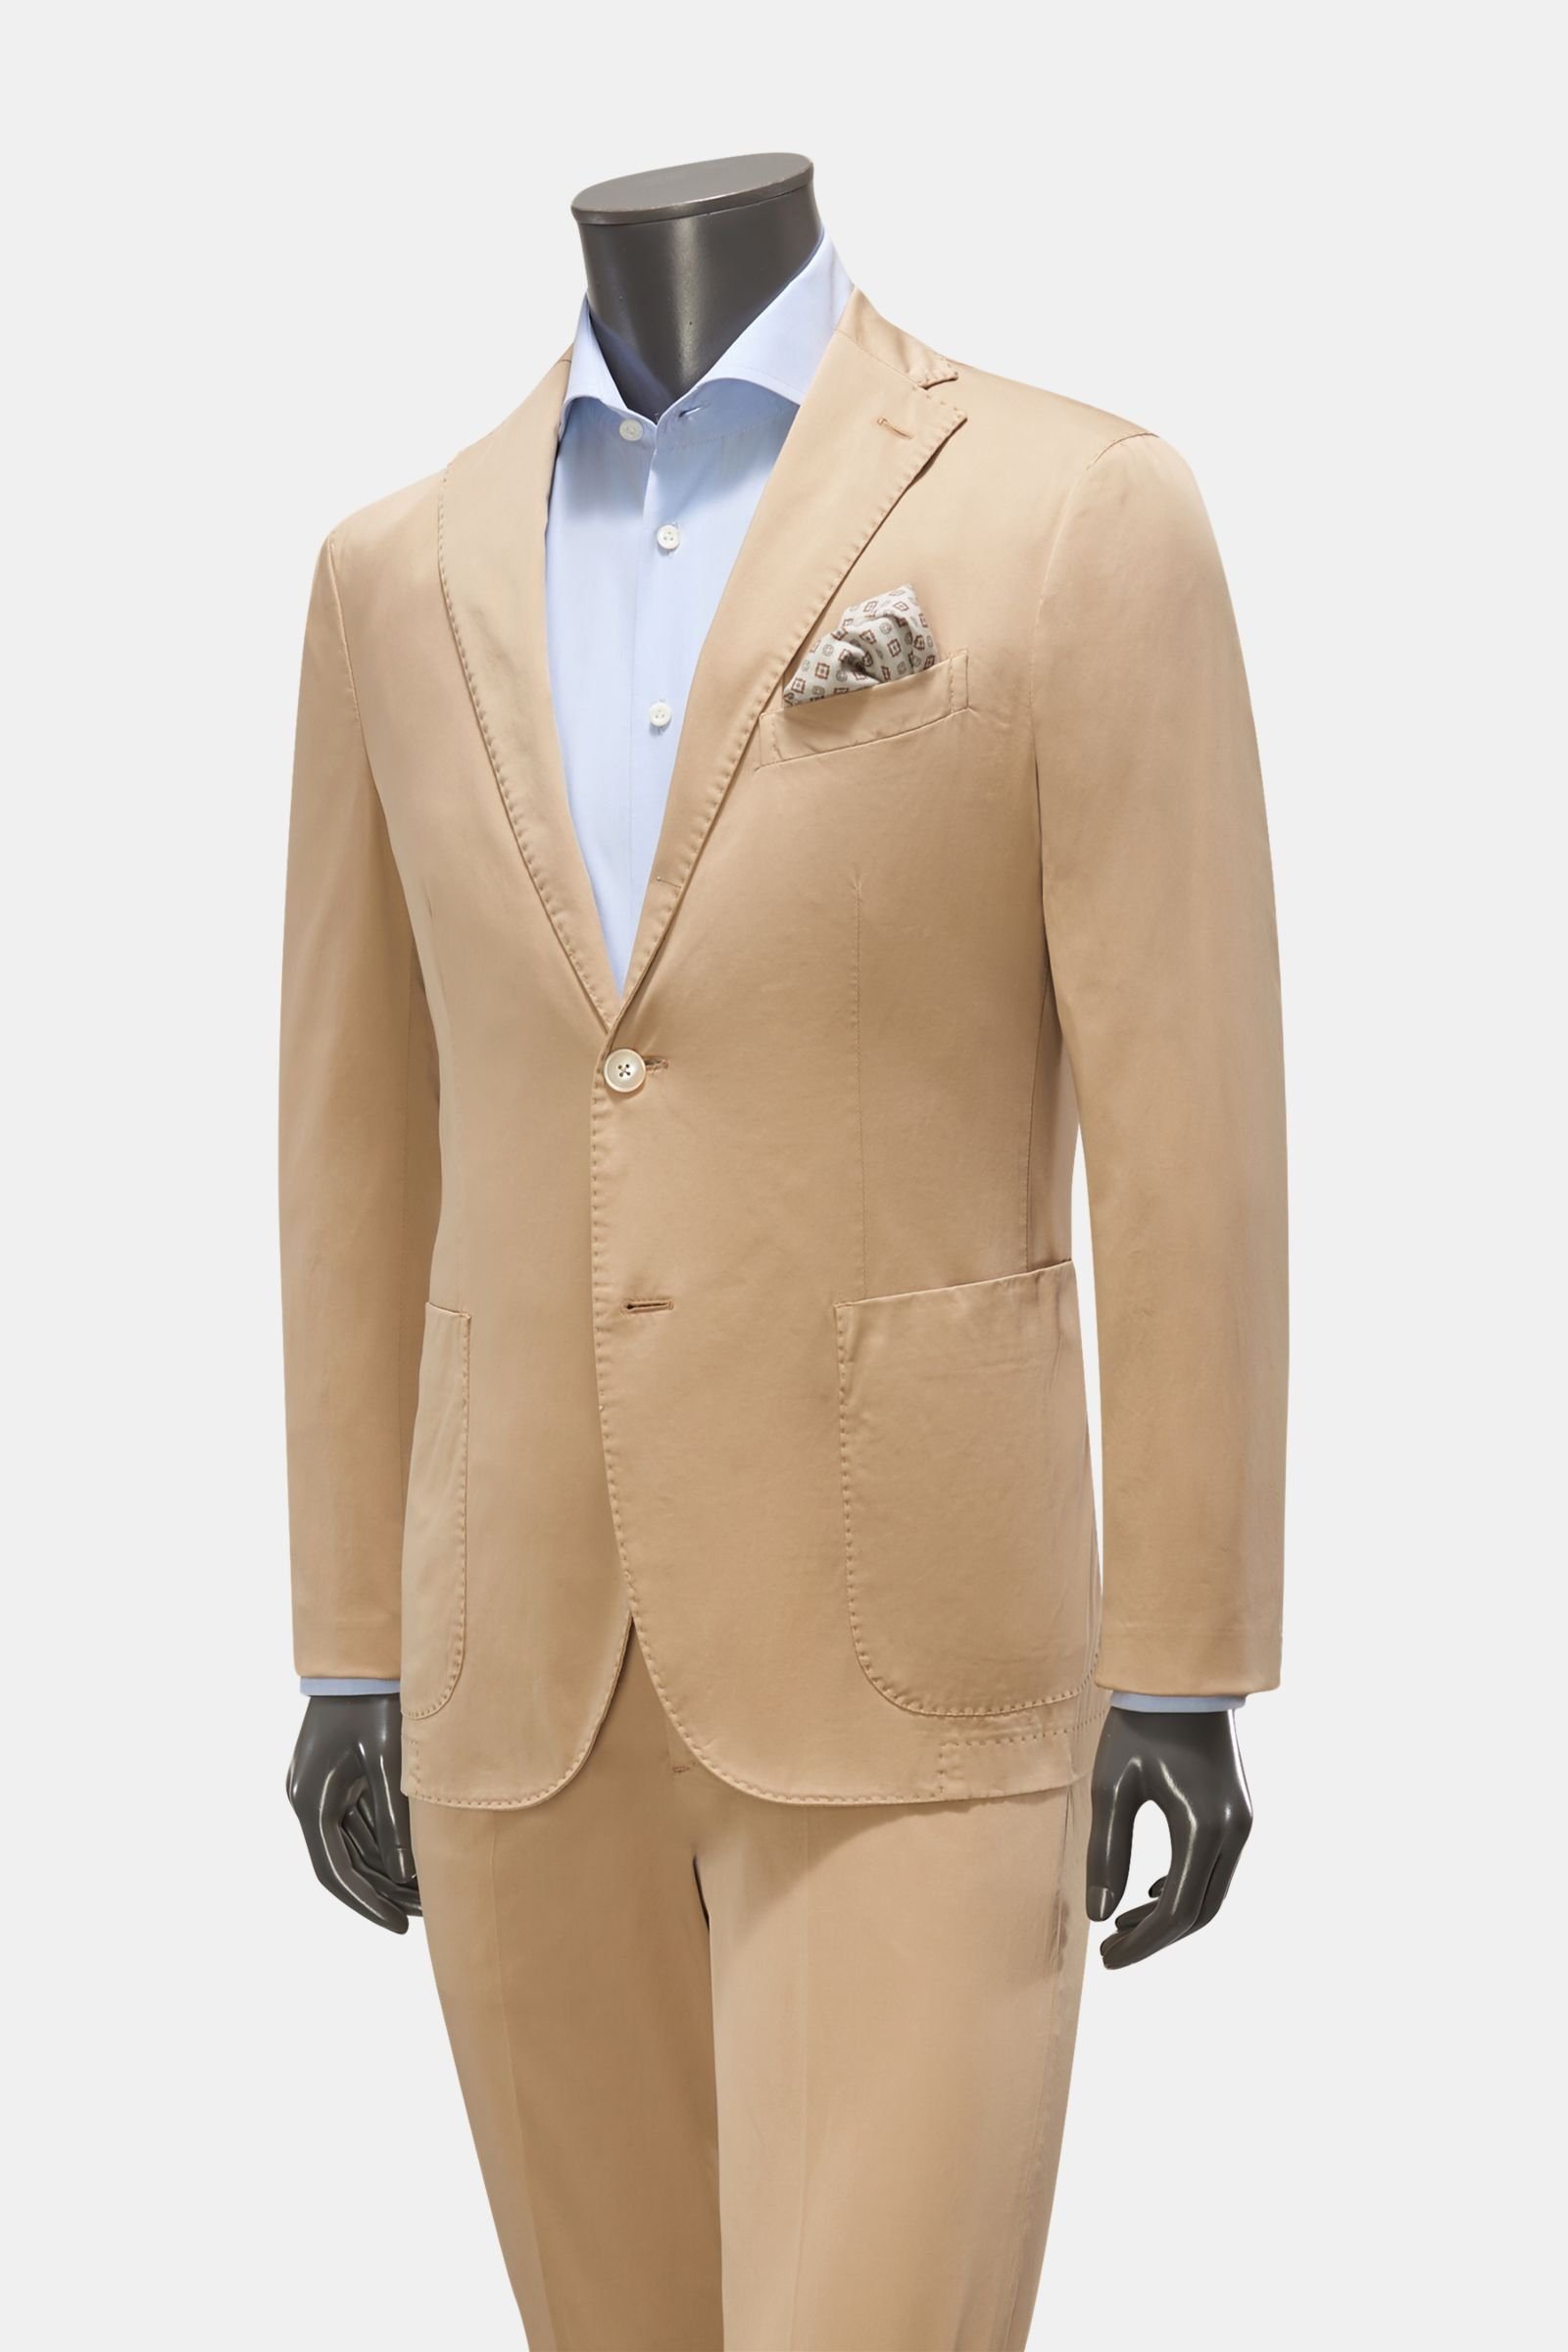 Cotton suit beige